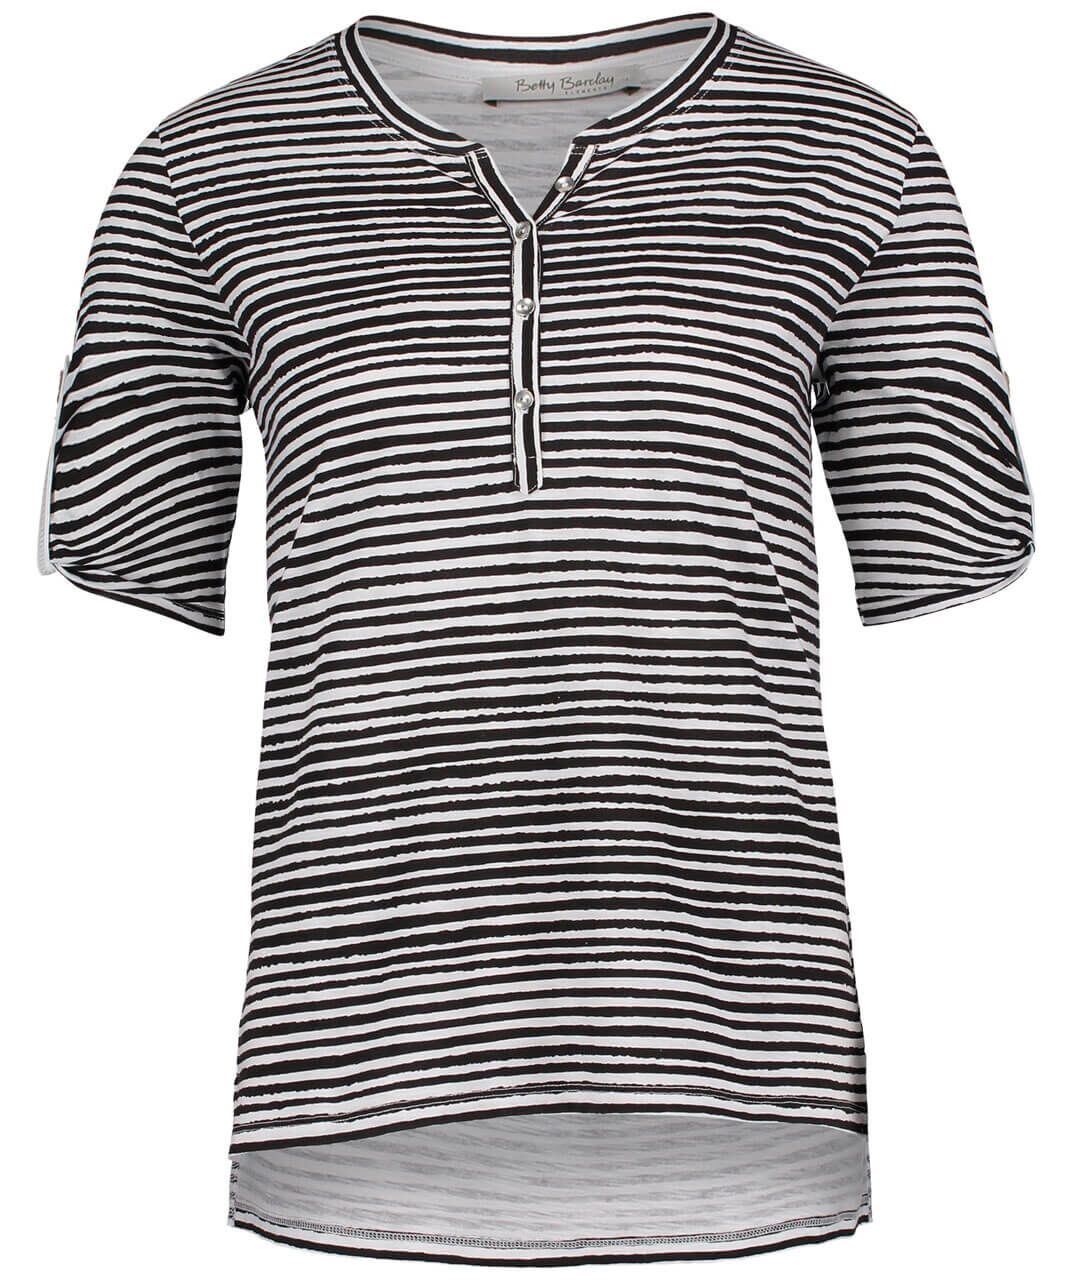 Betty Barclay Damen T-Shirt in Schwarz-Weiß gestreift, FarbNr. 9810